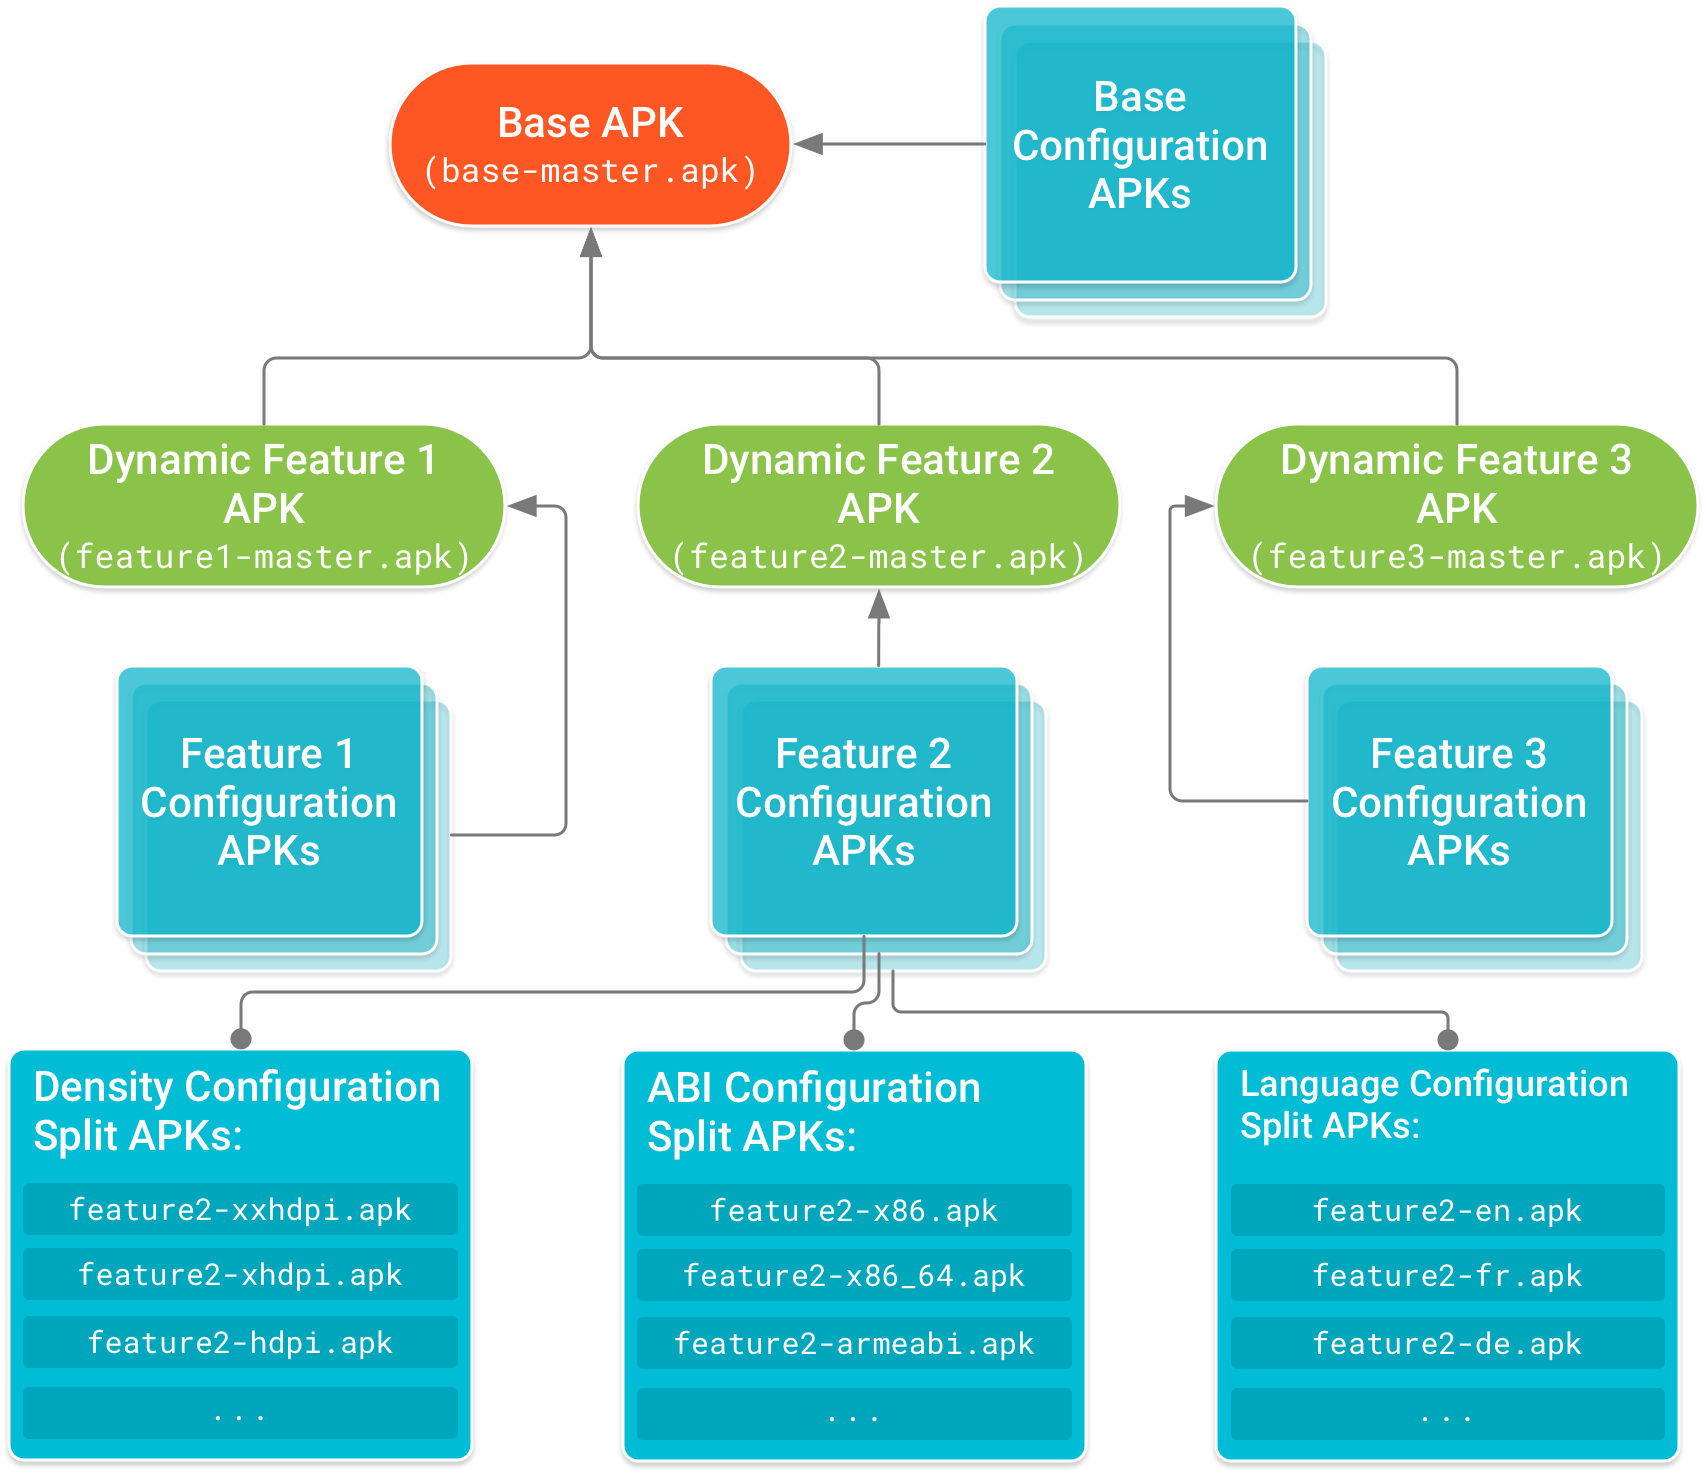 基本 APK 位于树的头部，并有动态功能 APK 依赖于基本 APK。配置 APK 构成依赖关系树的叶节点，此类 APK 中包含了基本 APK 和各动态功能 APK 的设备配置专用代码和资源。